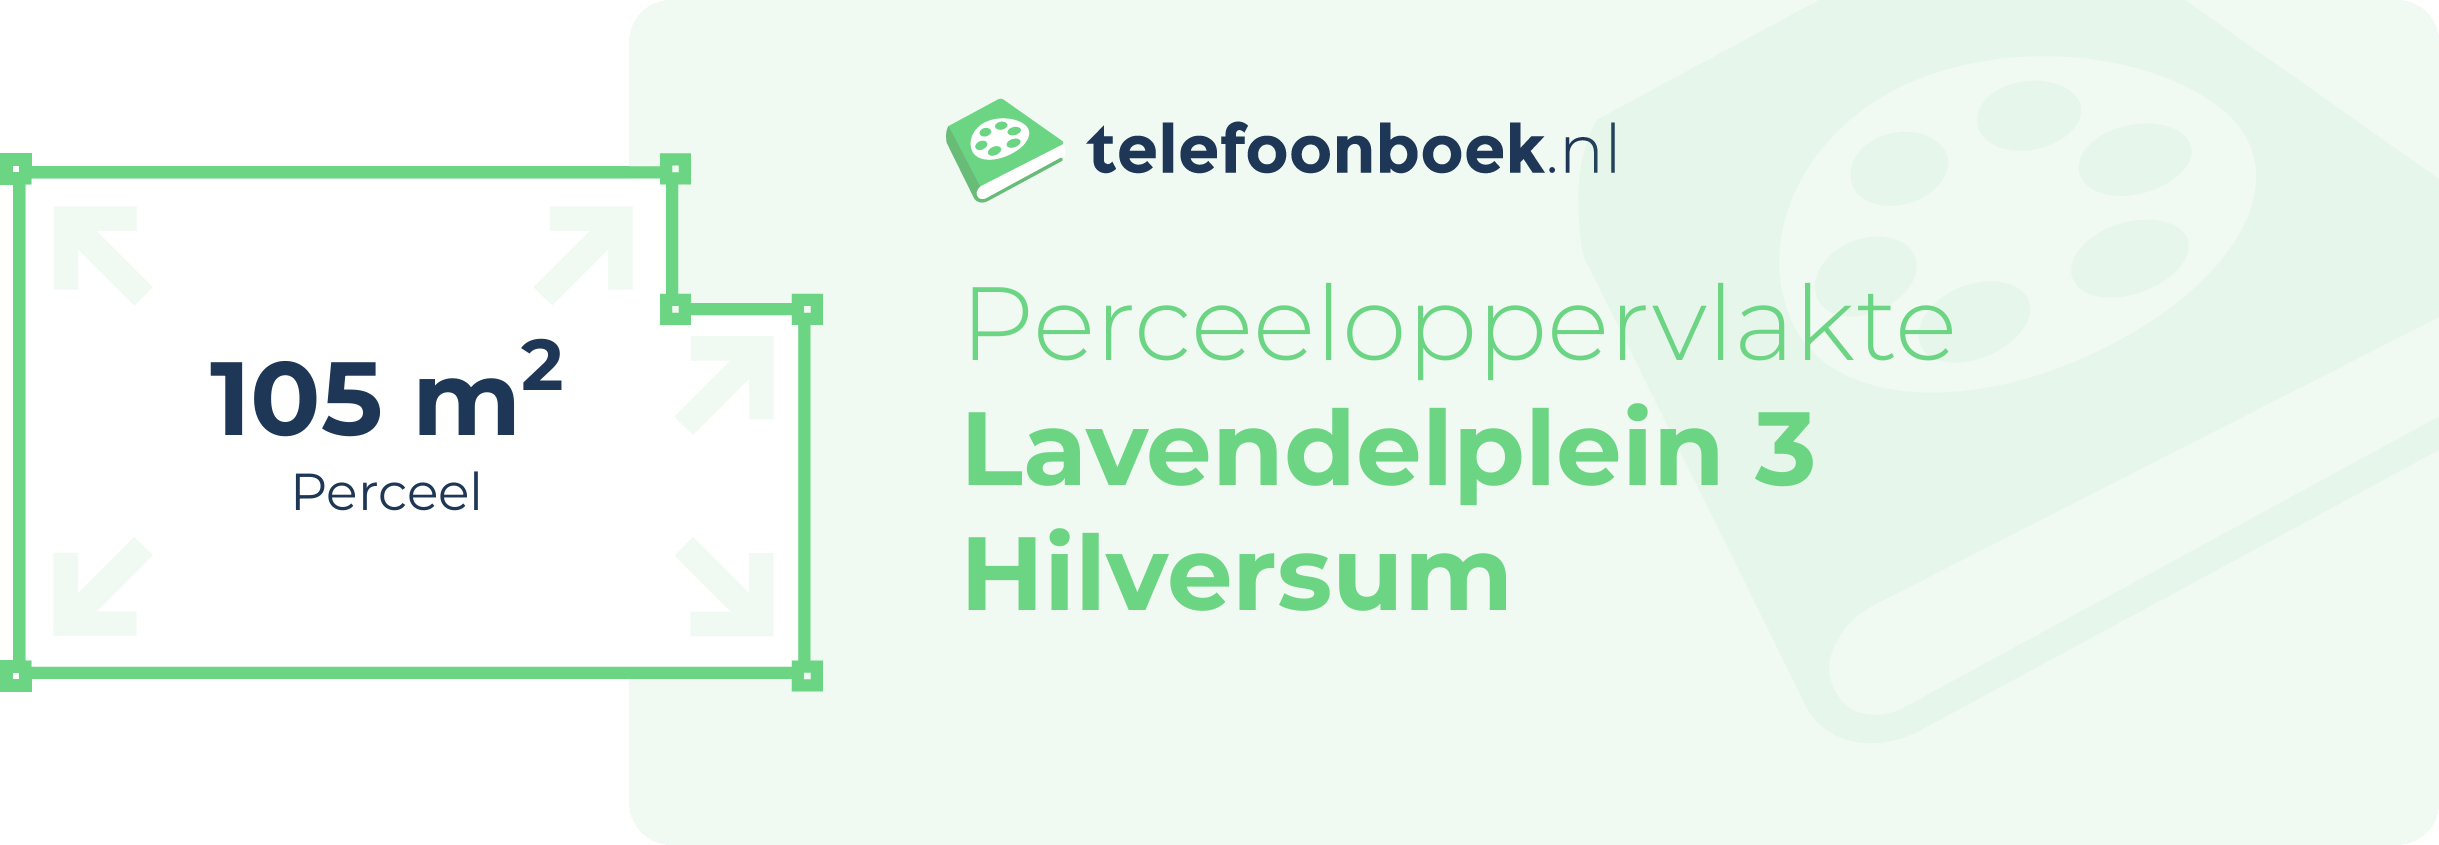 Perceeloppervlakte Lavendelplein 3 Hilversum